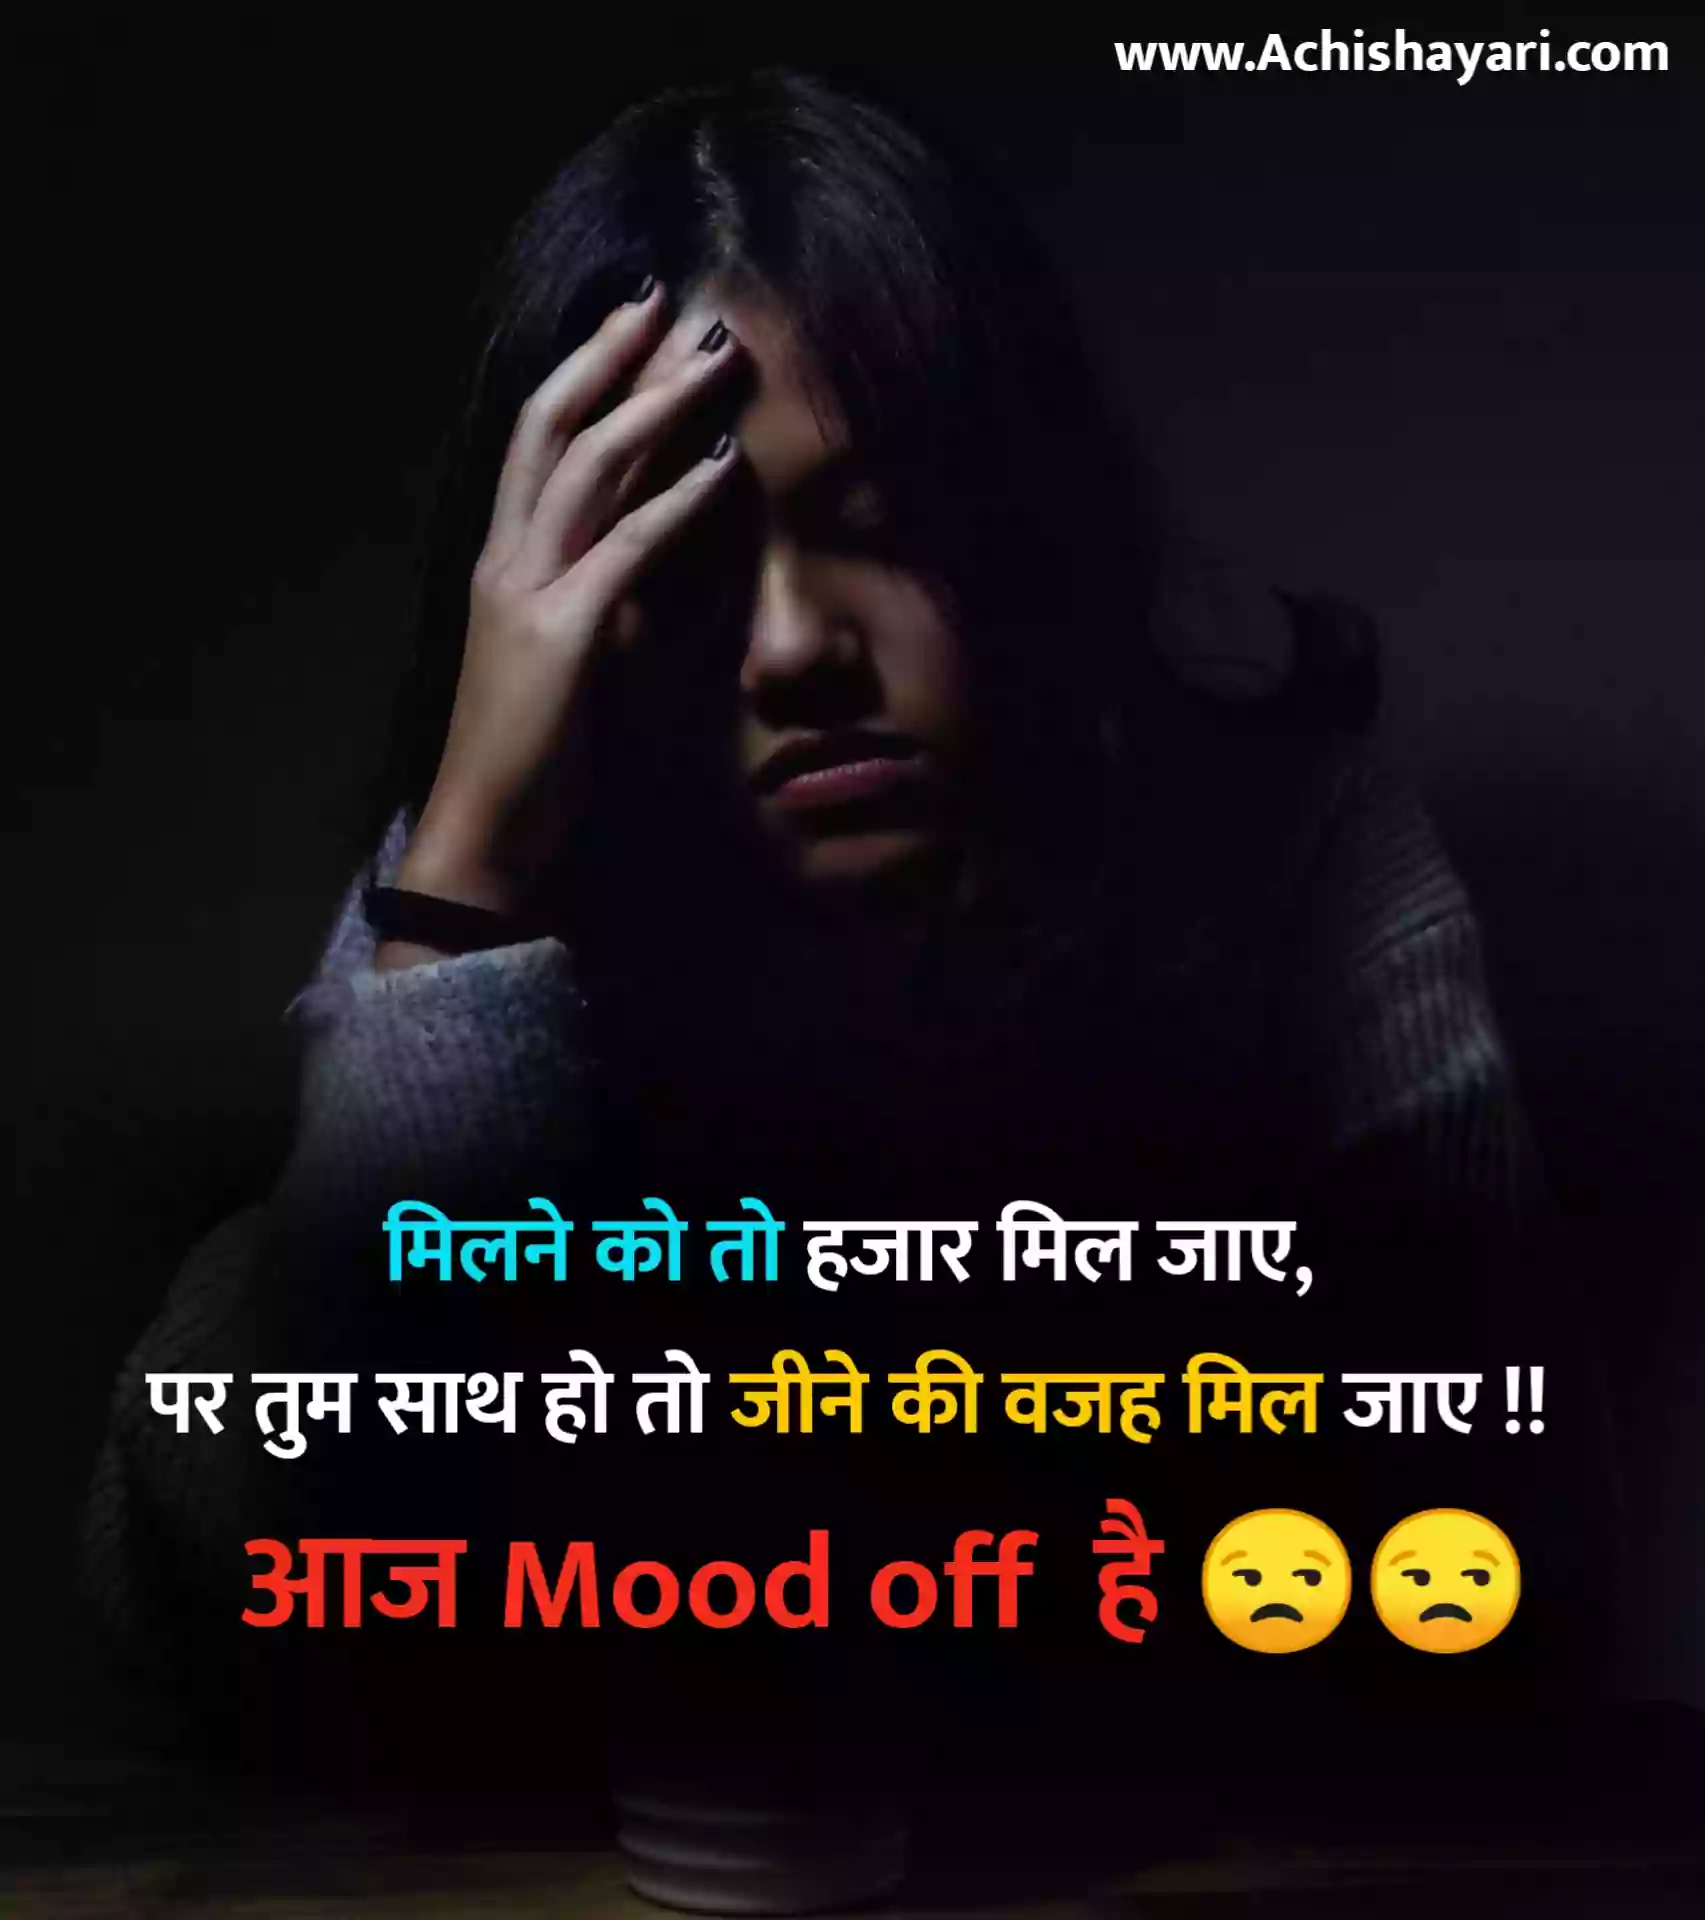 Mood off Status Hindi Image